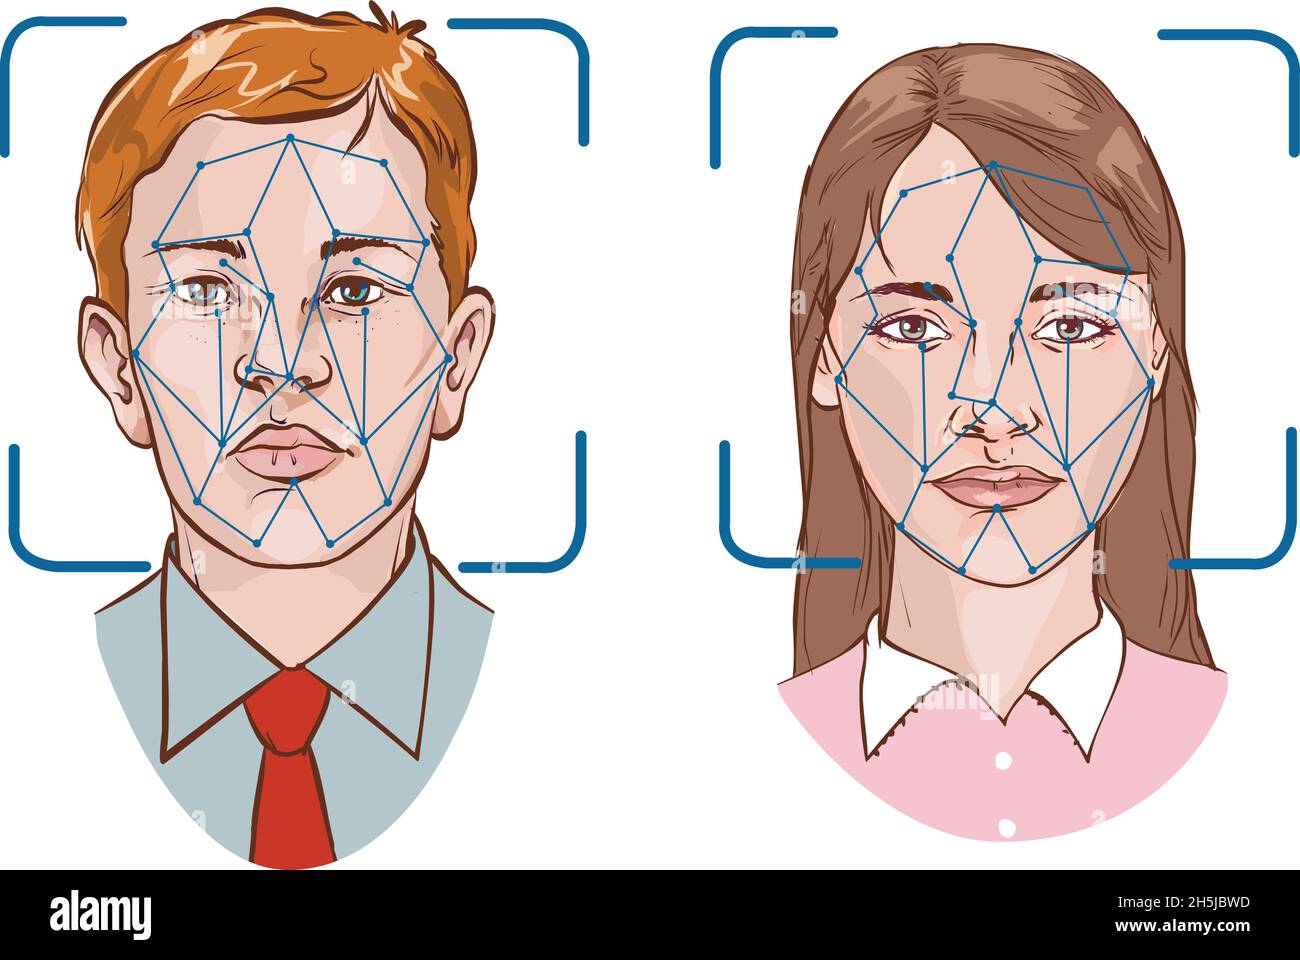 Riconoscimento facciale biometrico - sistema di sicurezza Illustrazione Vettoriale